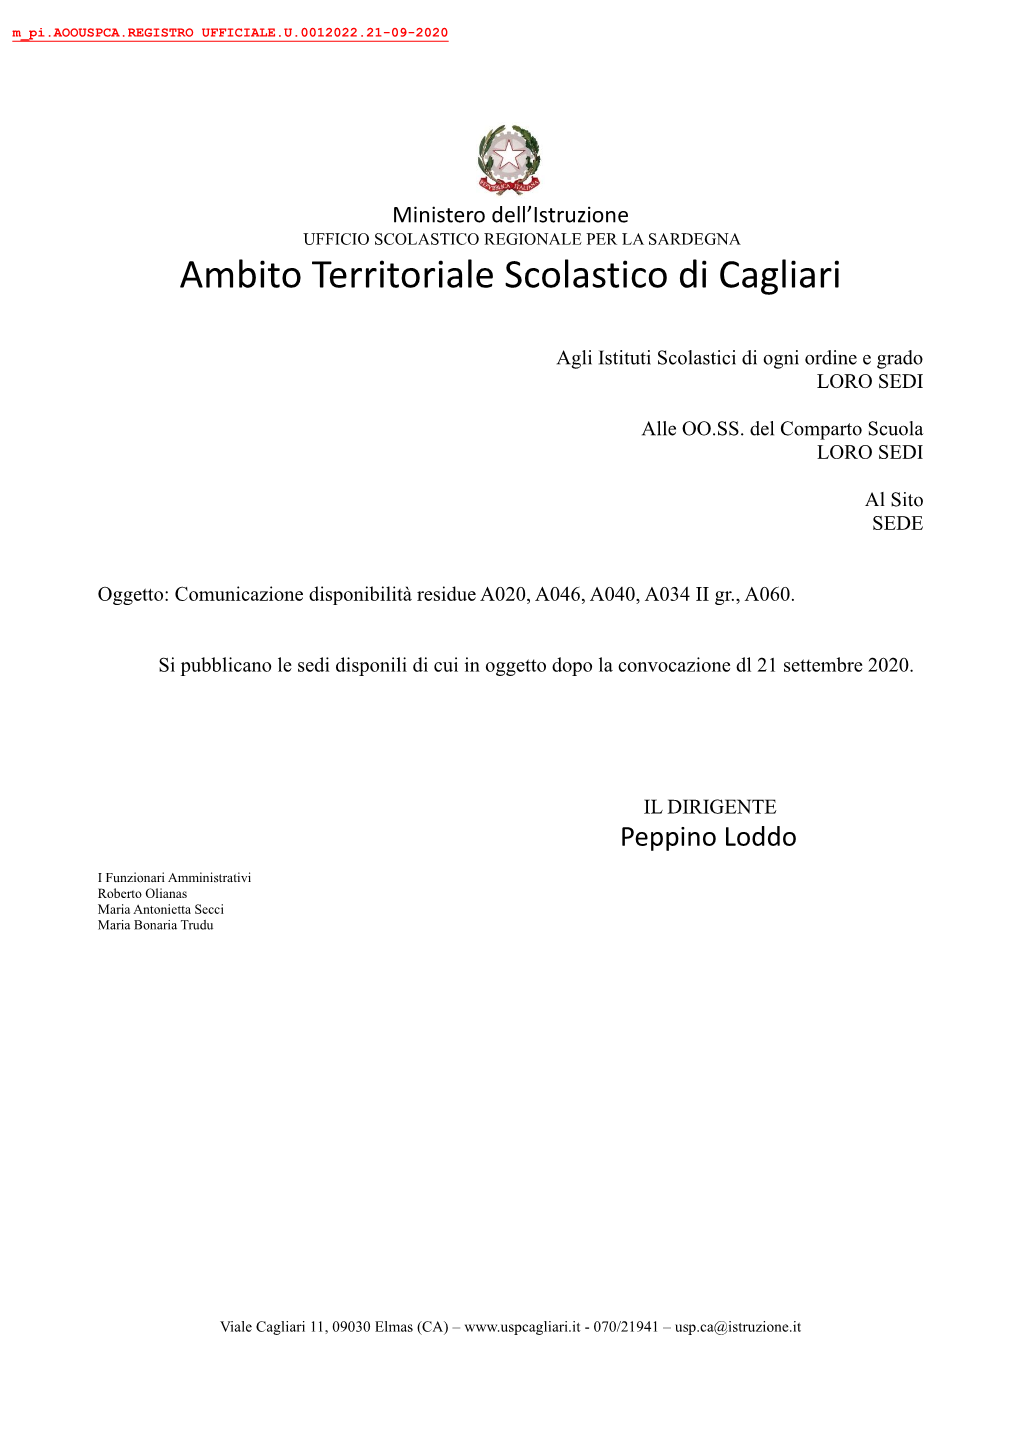 Ambito Territoriale Scolastico Di Cagliari